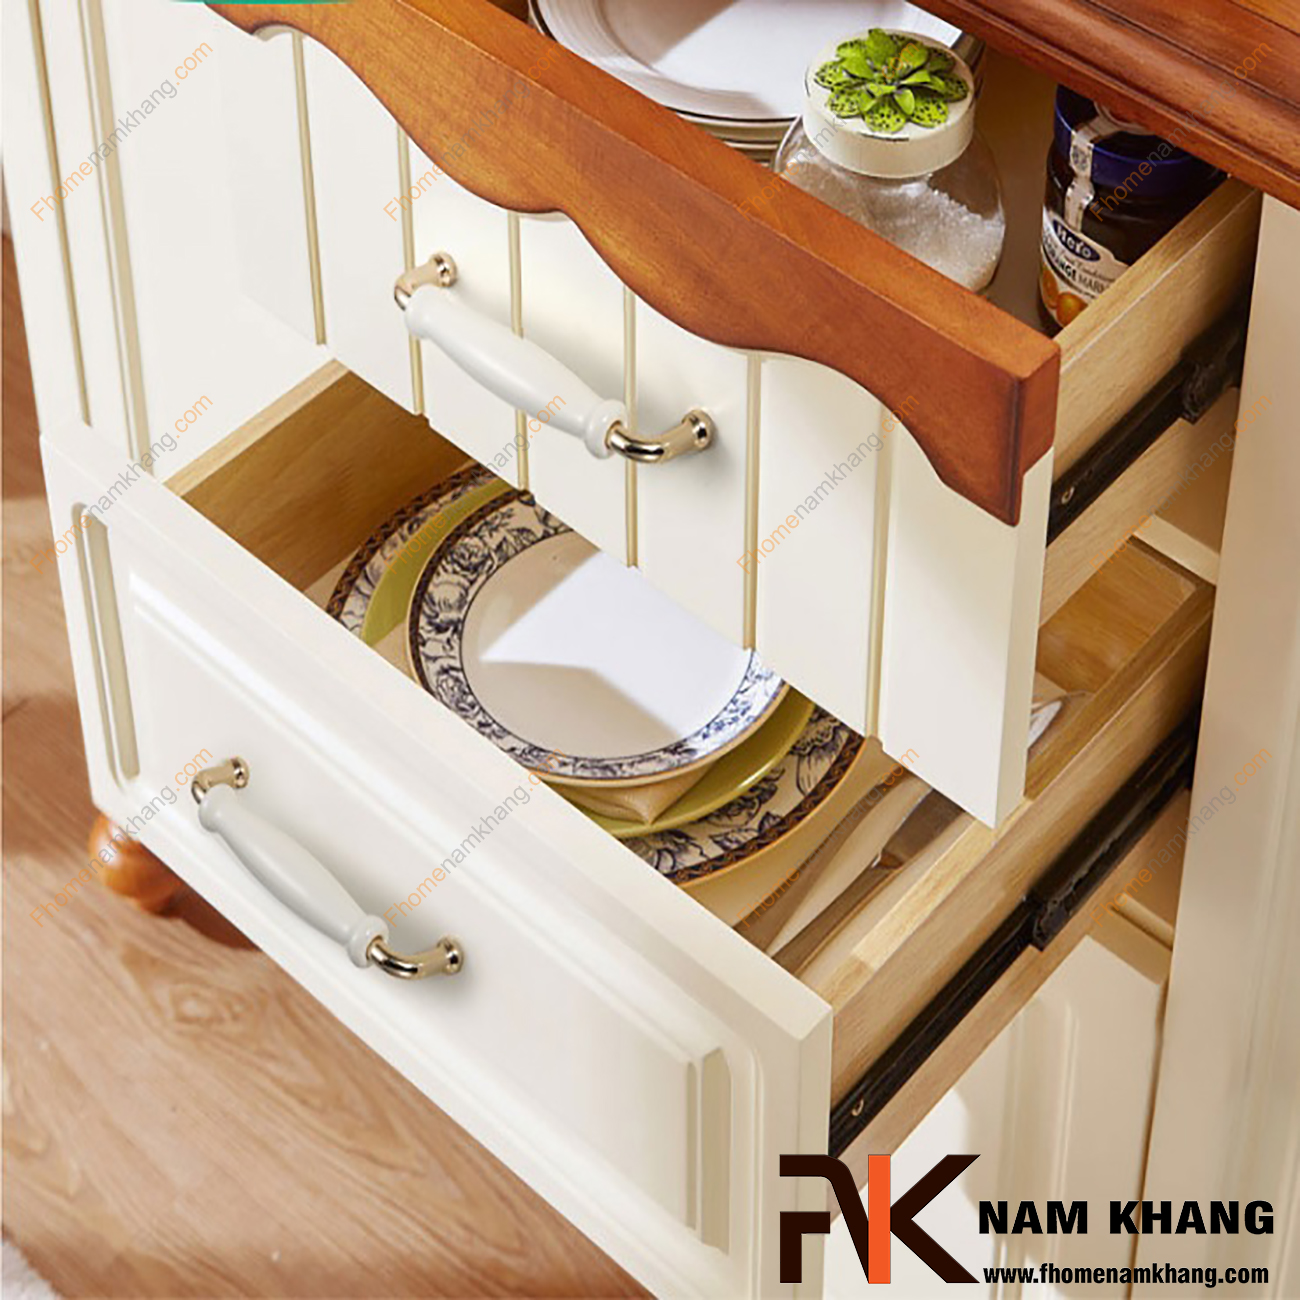 Hình ảnh về sản phẩm Tay nắm cửa tủ bếp sứ trắng vàng NK338-V: